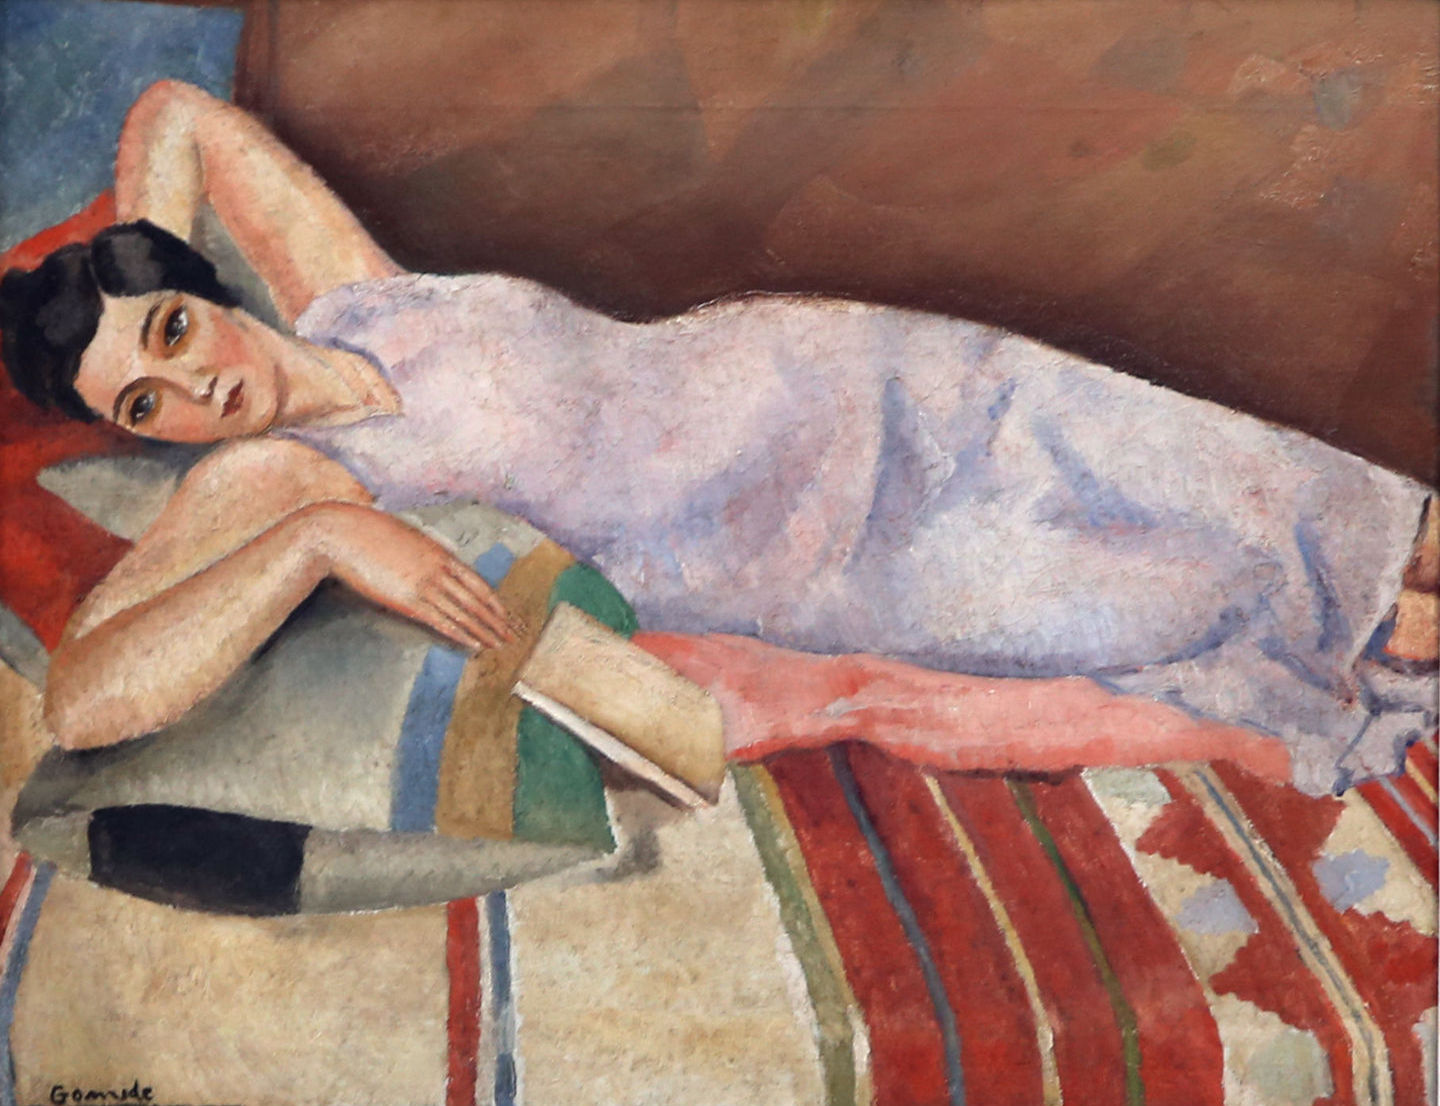 Antônio Gomide. Mulher deitada, 1957. Oil on canvas.